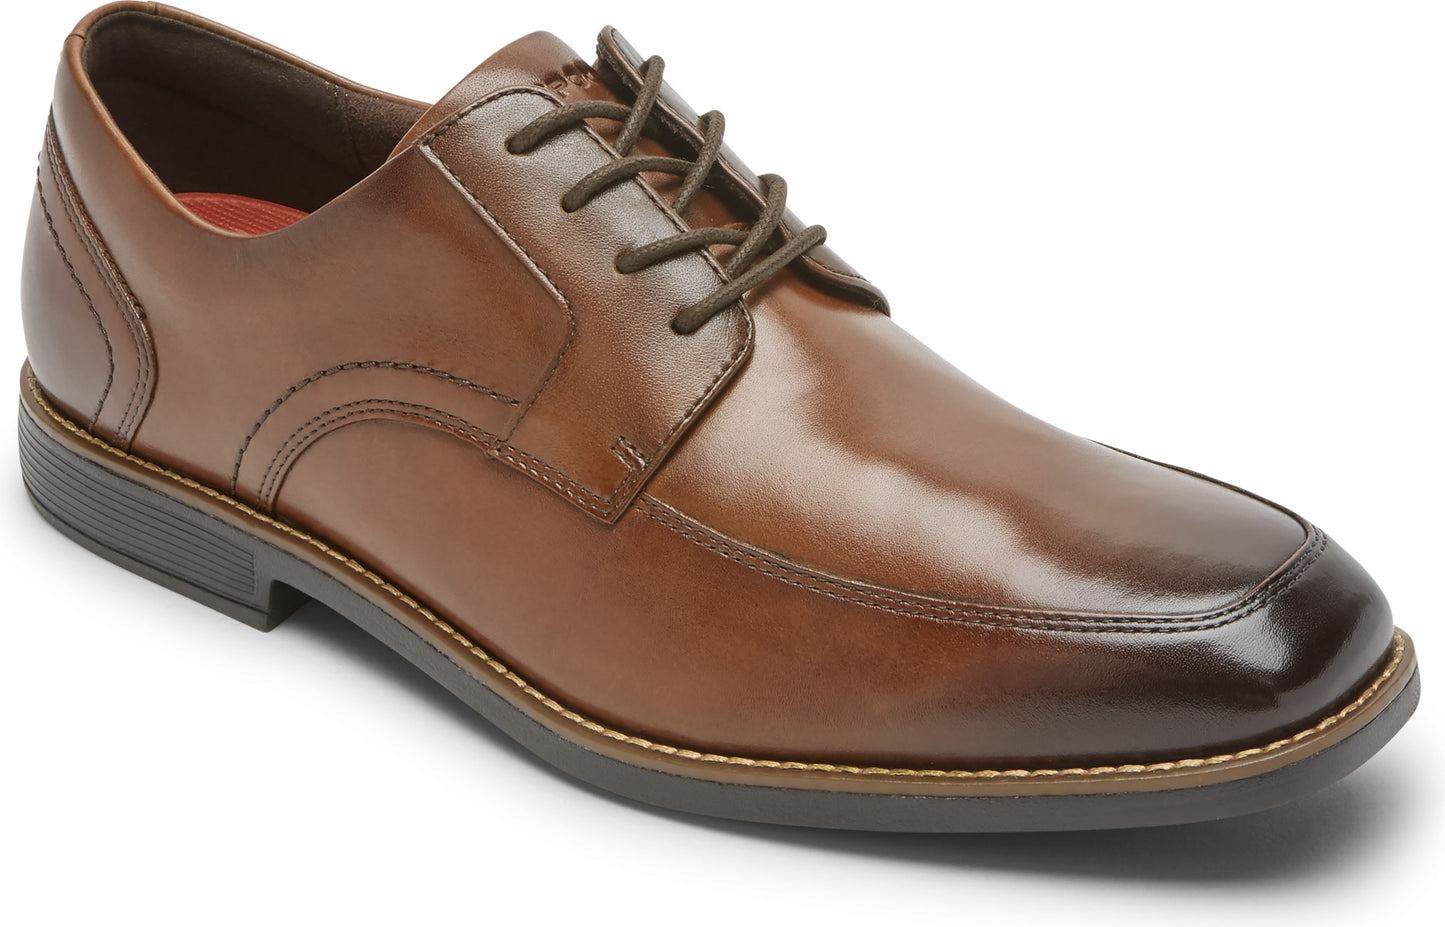 Rockport Shoes Slayter Apron Toe Brown - Wide